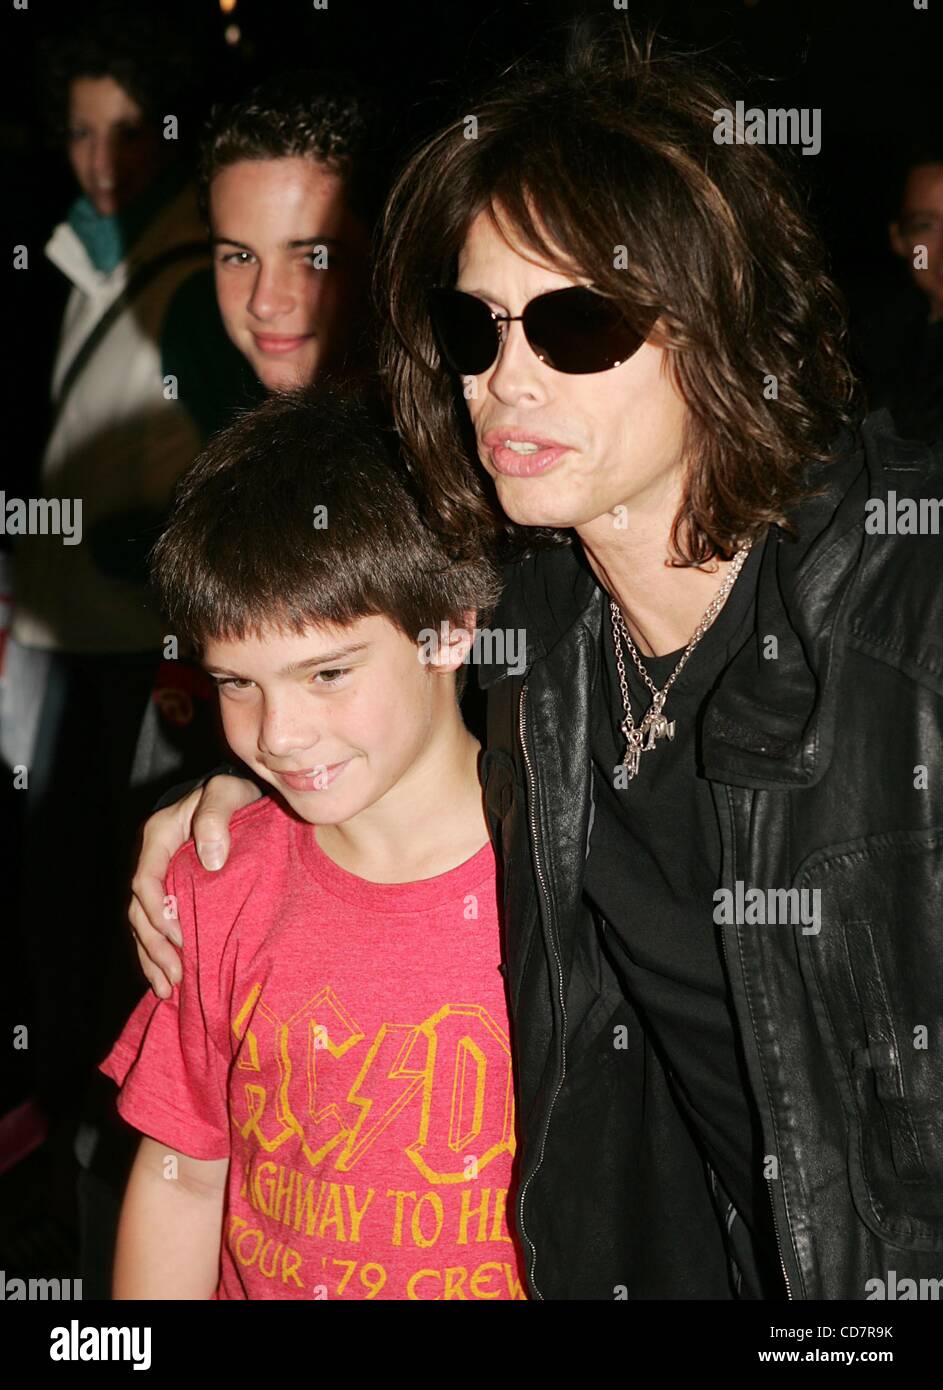 Singer Steven Tyler and his son Taj Tyler arrive for the premiere of